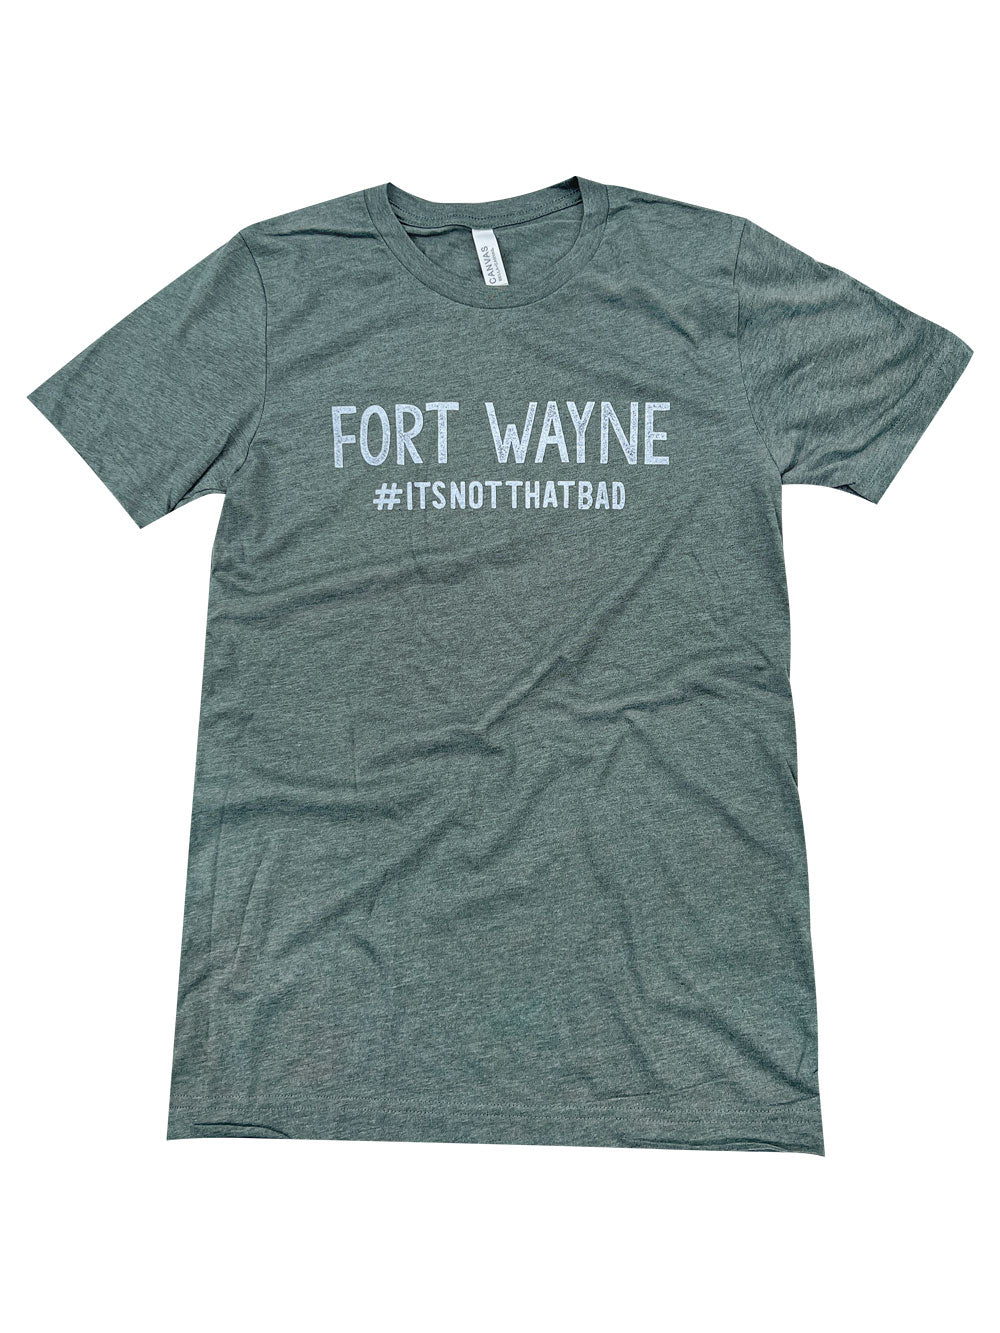 Fort Wayne #itsnotthatbad green heather t-shirt